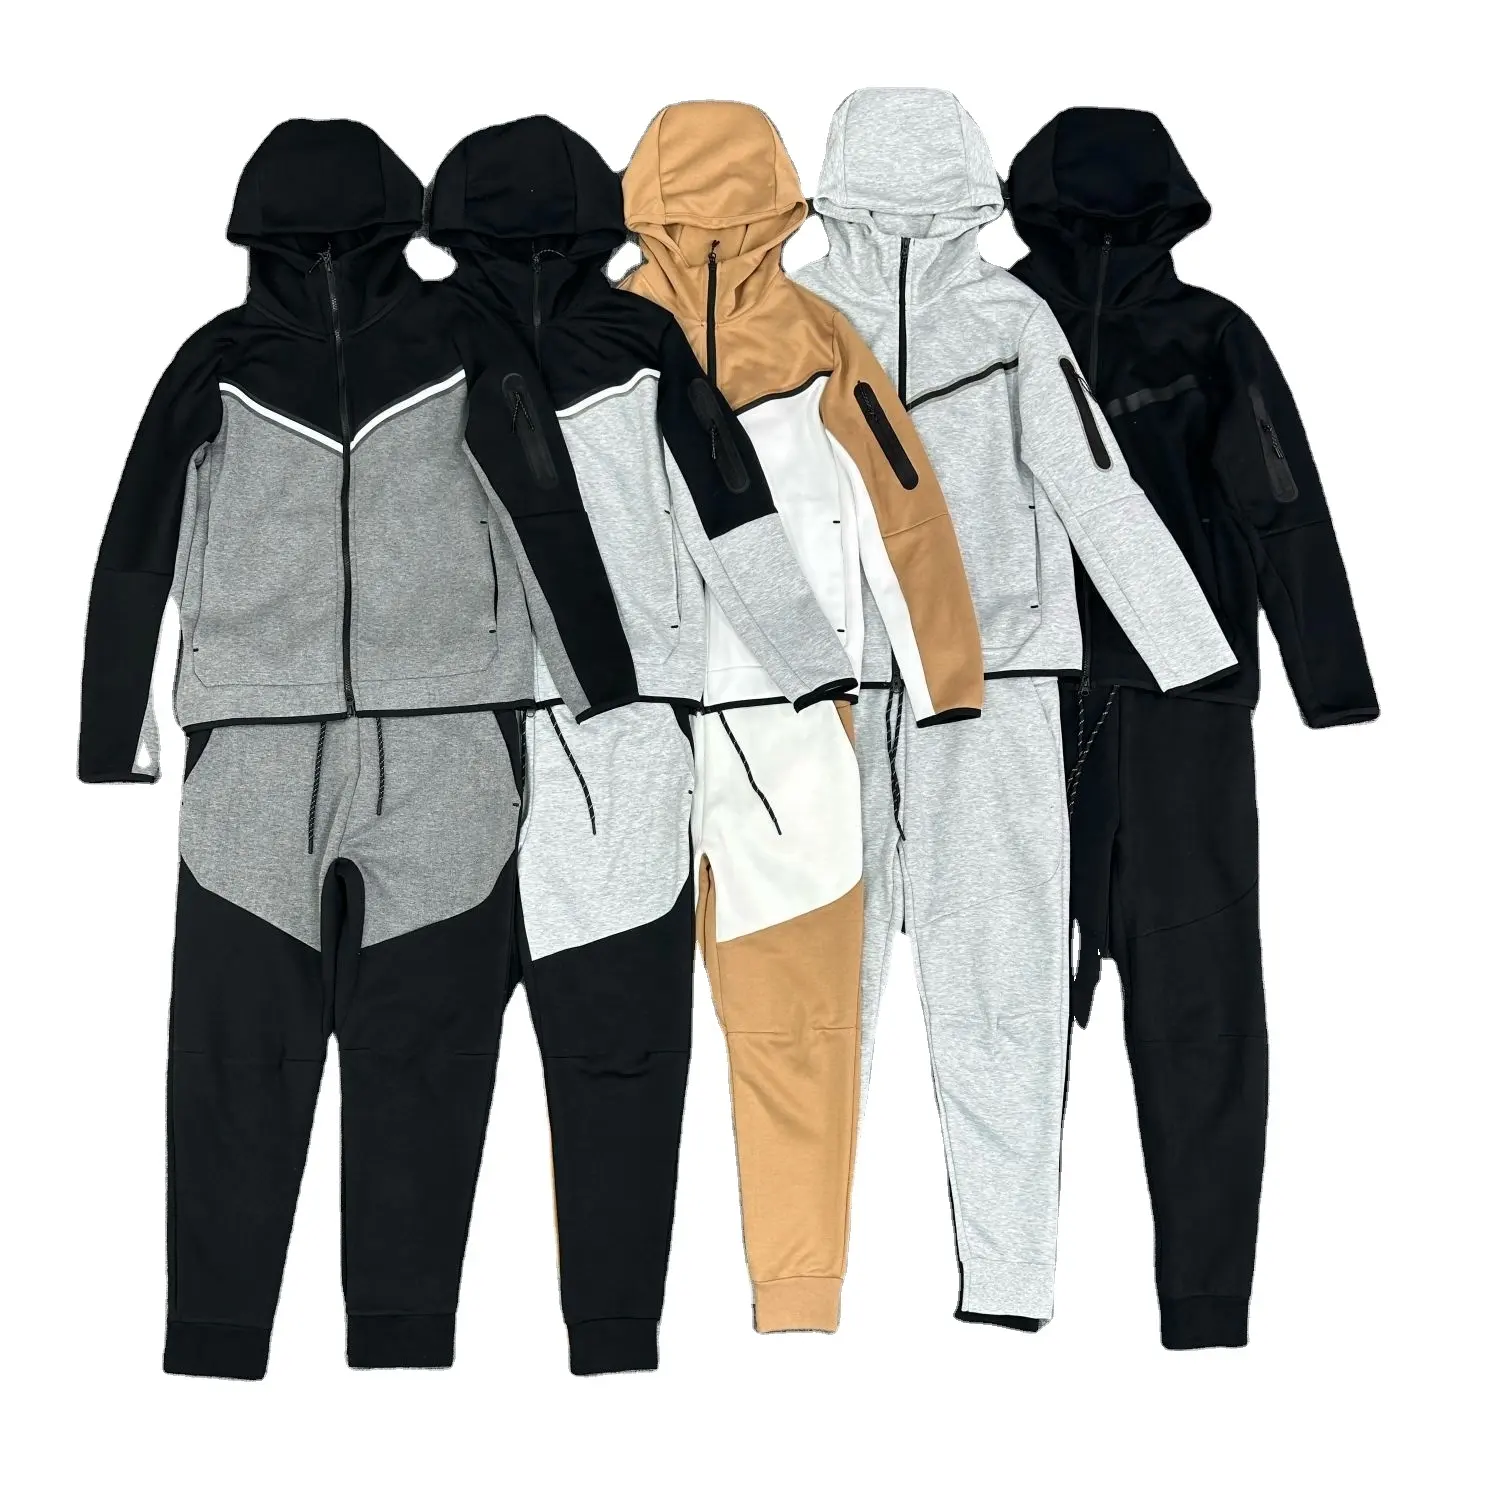 Shuliqi, мужские комплекты с логотипом на заказ, спортивный костюм, спортивная одежда для мужчин, комплекты, тренировочная одежда/удобный мужской спортивный костюм на заказ для тренажерного зала